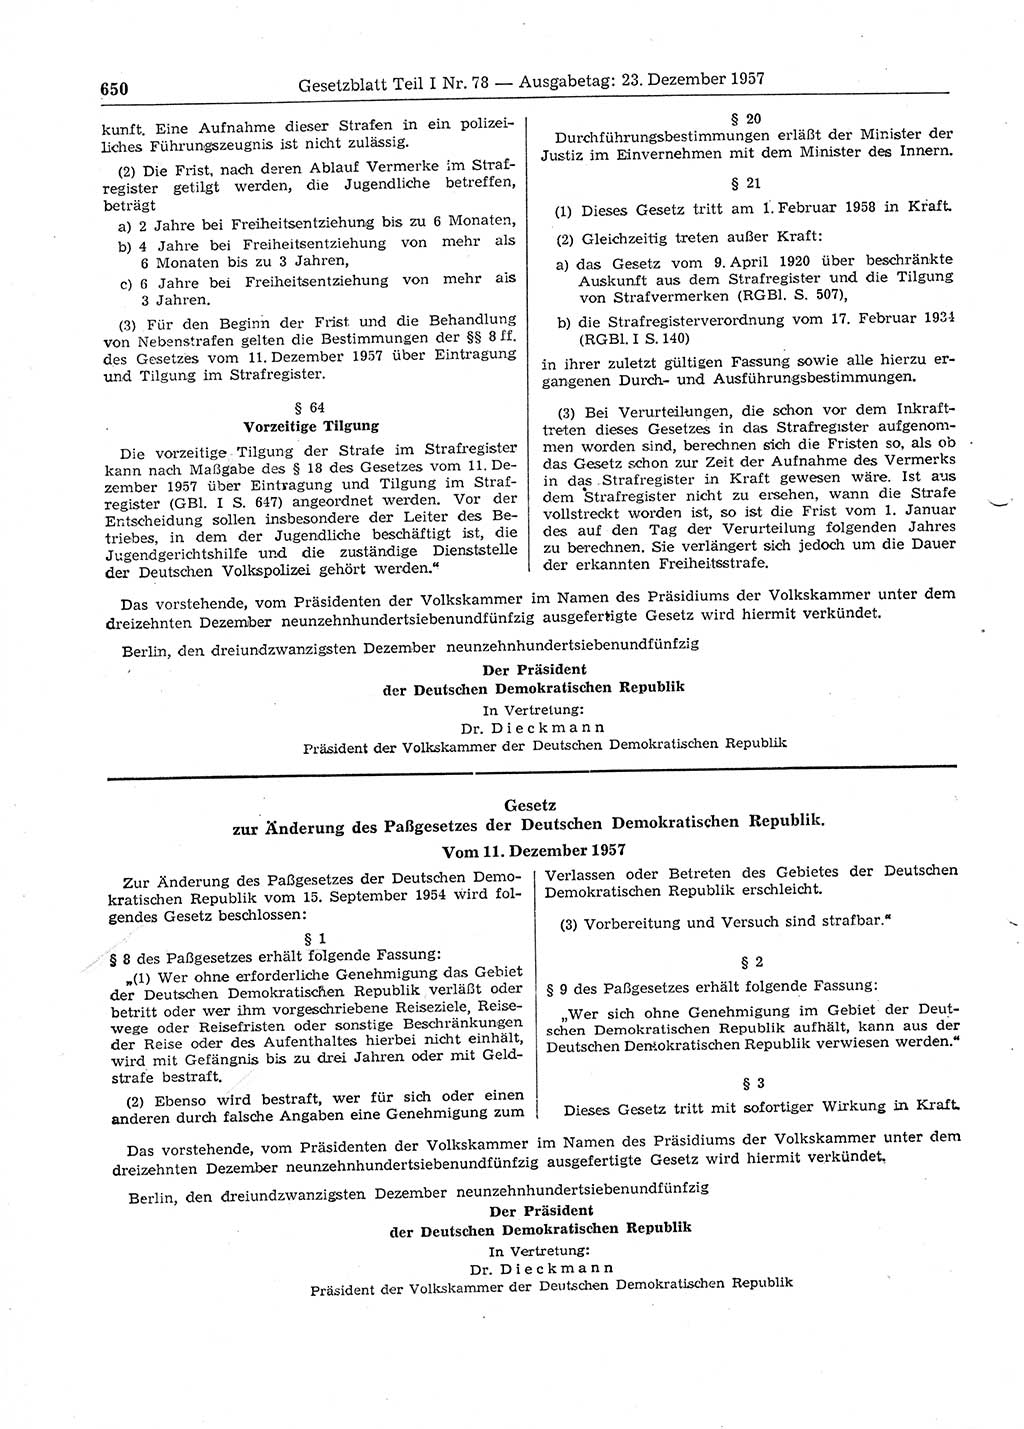 Gesetzblatt (GBl.) der Deutschen Demokratischen Republik (DDR) Teil Ⅰ 1957, Seite 650 (GBl. DDR Ⅰ 1957, S. 650)